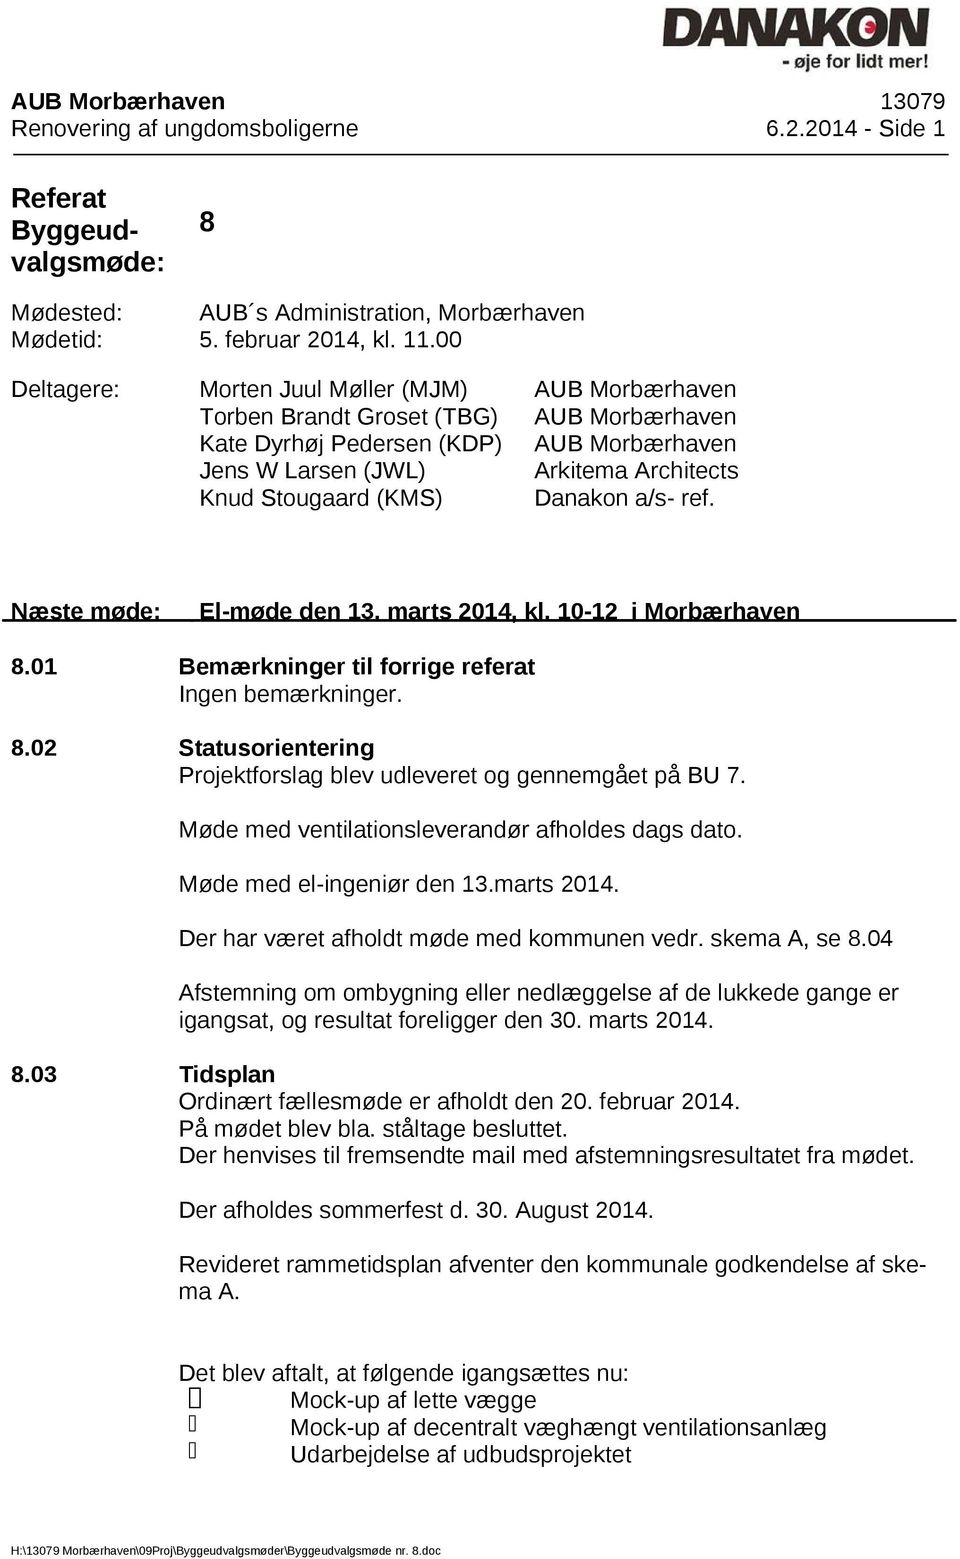 Architects Danakon a/s- ref. Næste møde: El-møde den 13. marts 2014, kl. 10-12 i Morbærhaven 8.01 Bemærkninger til forrige referat Ingen bemærkninger. 8.02 Statusorientering Projektforslag blev udleveret og gennemgået på BU 7.